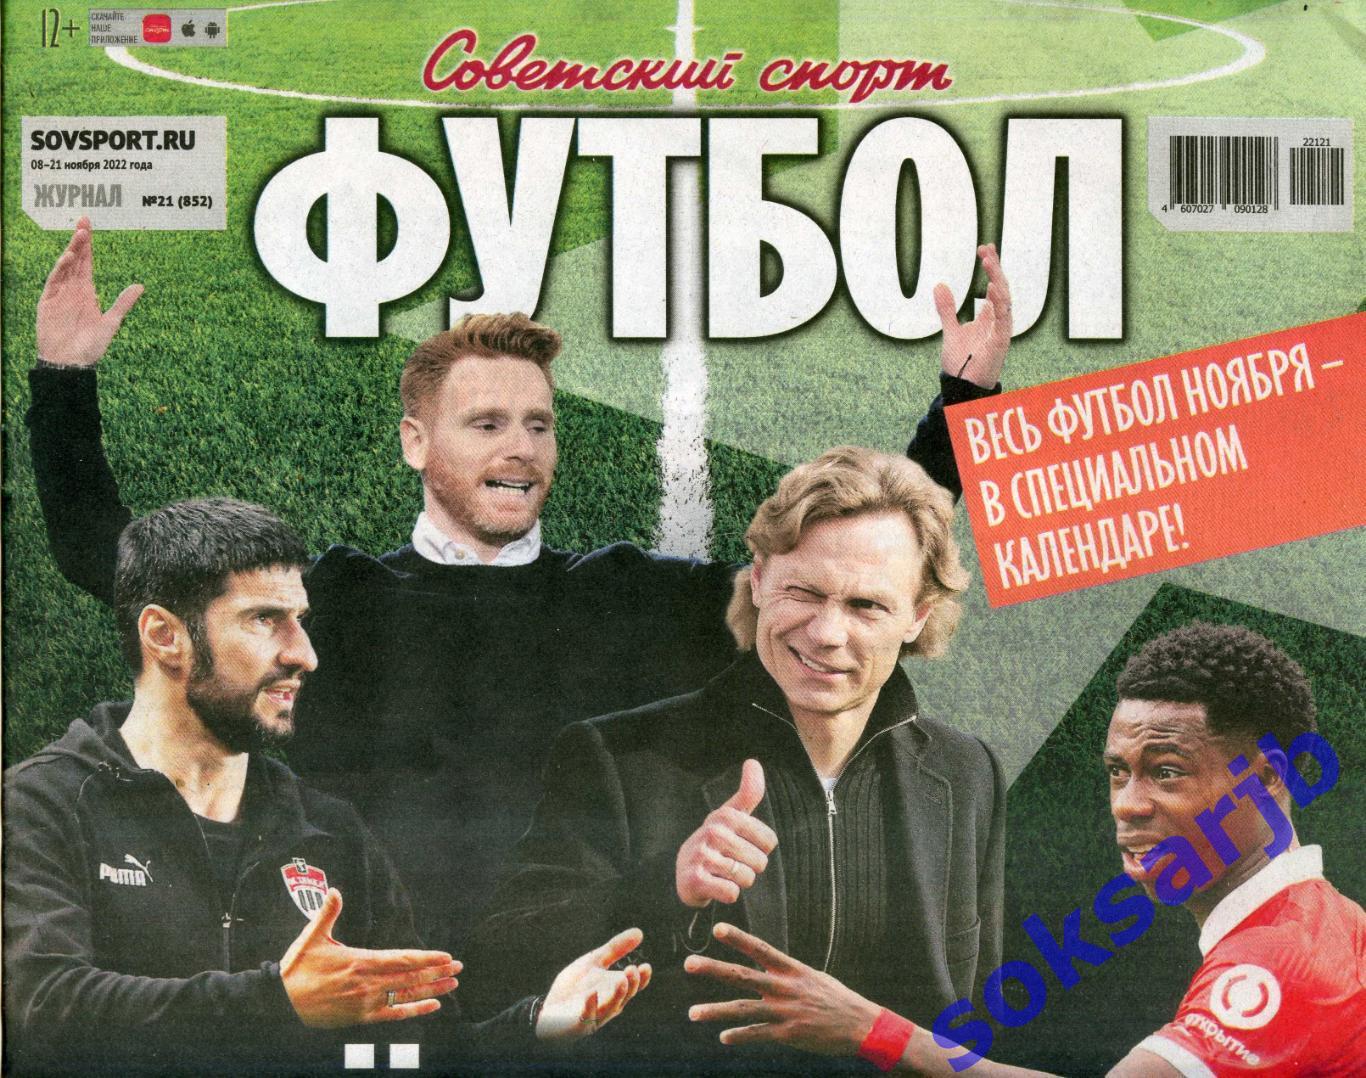 2022. Еженедельник Советский спорт - Футбол № 21 (852).